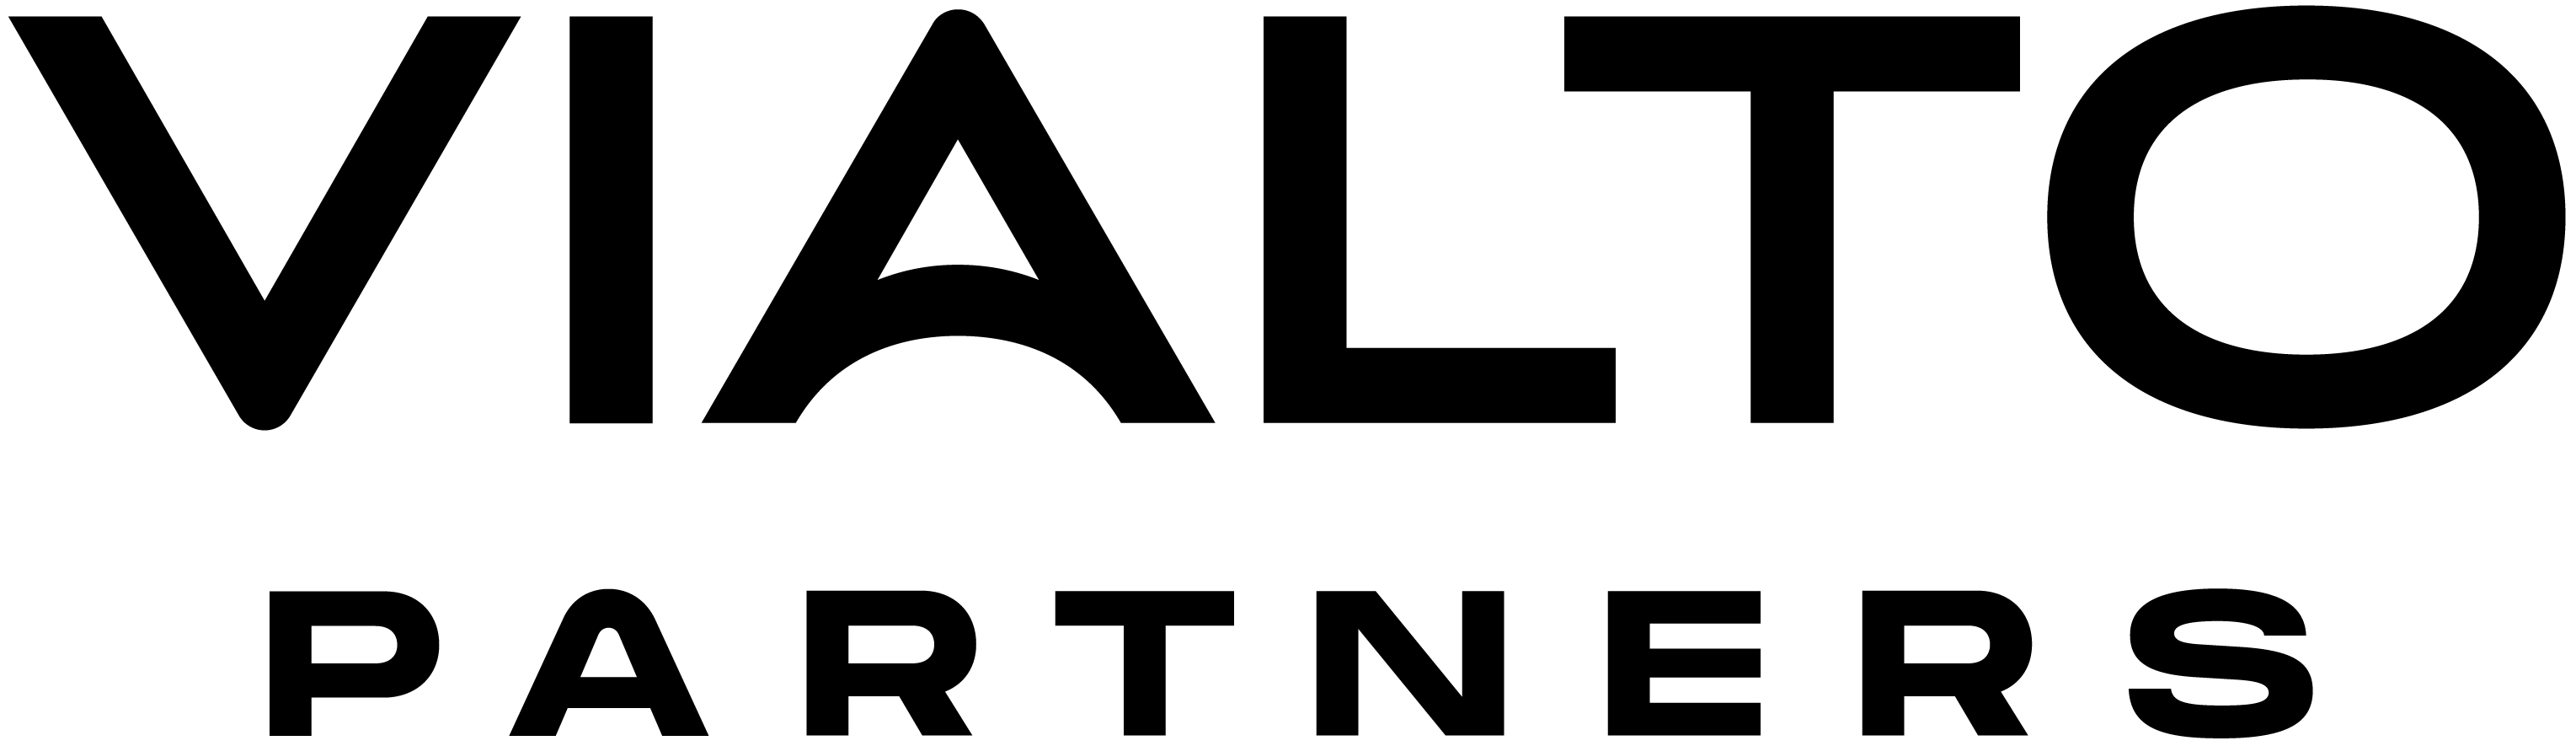 Vialto Logo - The official emblem of Vialto, representing their brand and services.